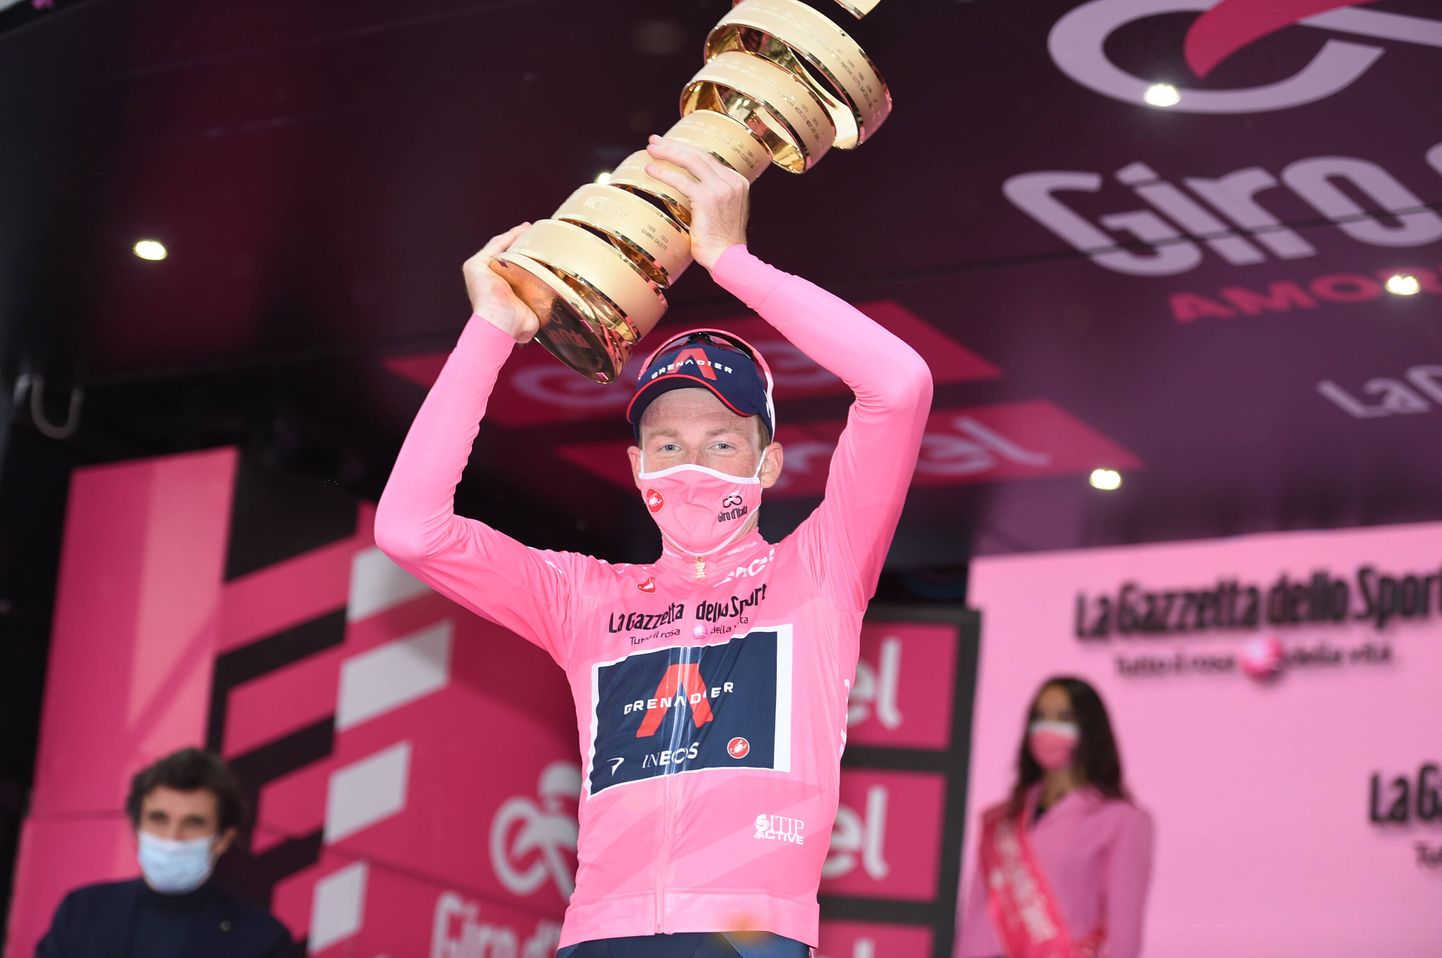 Британец Тео Гейган Харт из команды INEOS Grenadiers стал победителем общего зачета престижной веломногодневки "Джиро д'Италия".